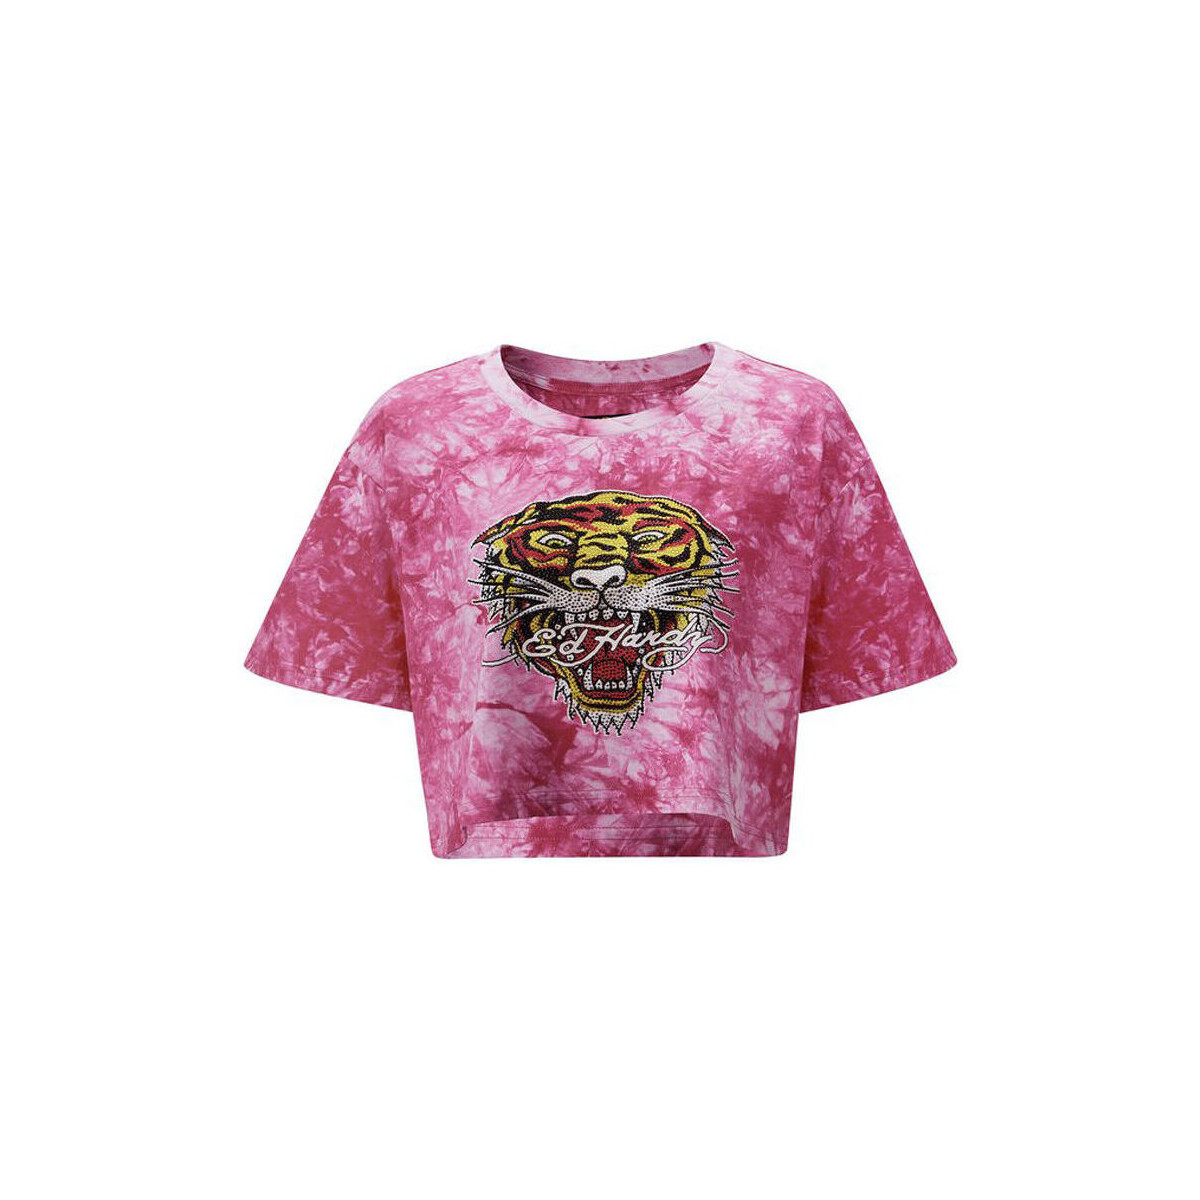 Ruhák Női Pólók / Galléros Pólók Ed Hardy Los tigre grop top hot pink Rózsaszín